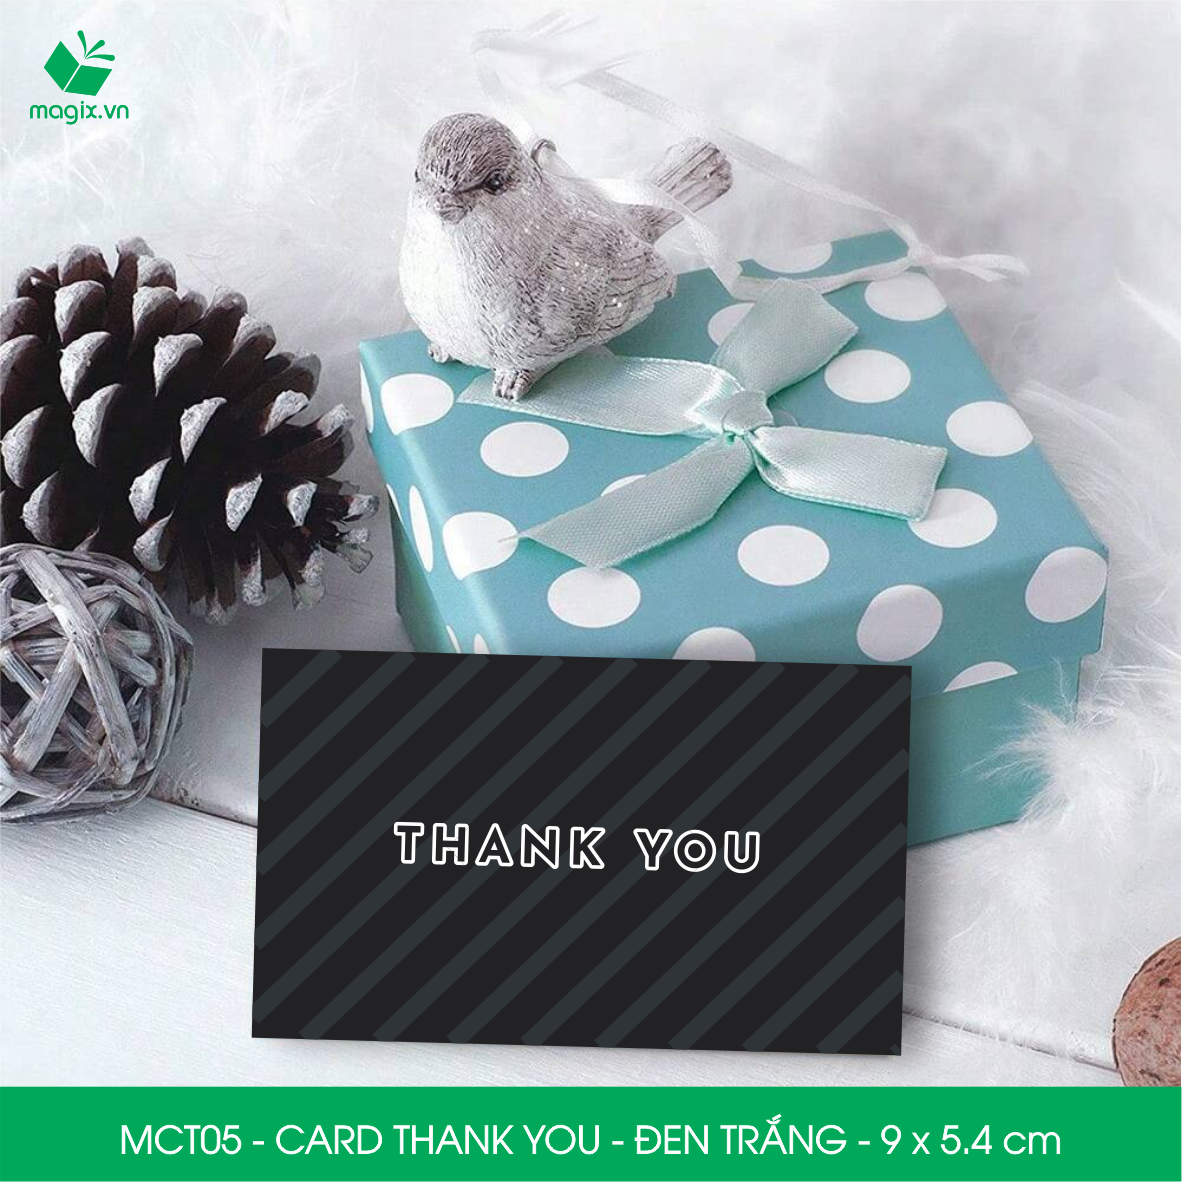 MCT05 - 9x5.4 cm - 50 Card Thank you, Thiệp cảm ơn khách hàng, card cám ơn cứng cáp sang trọng